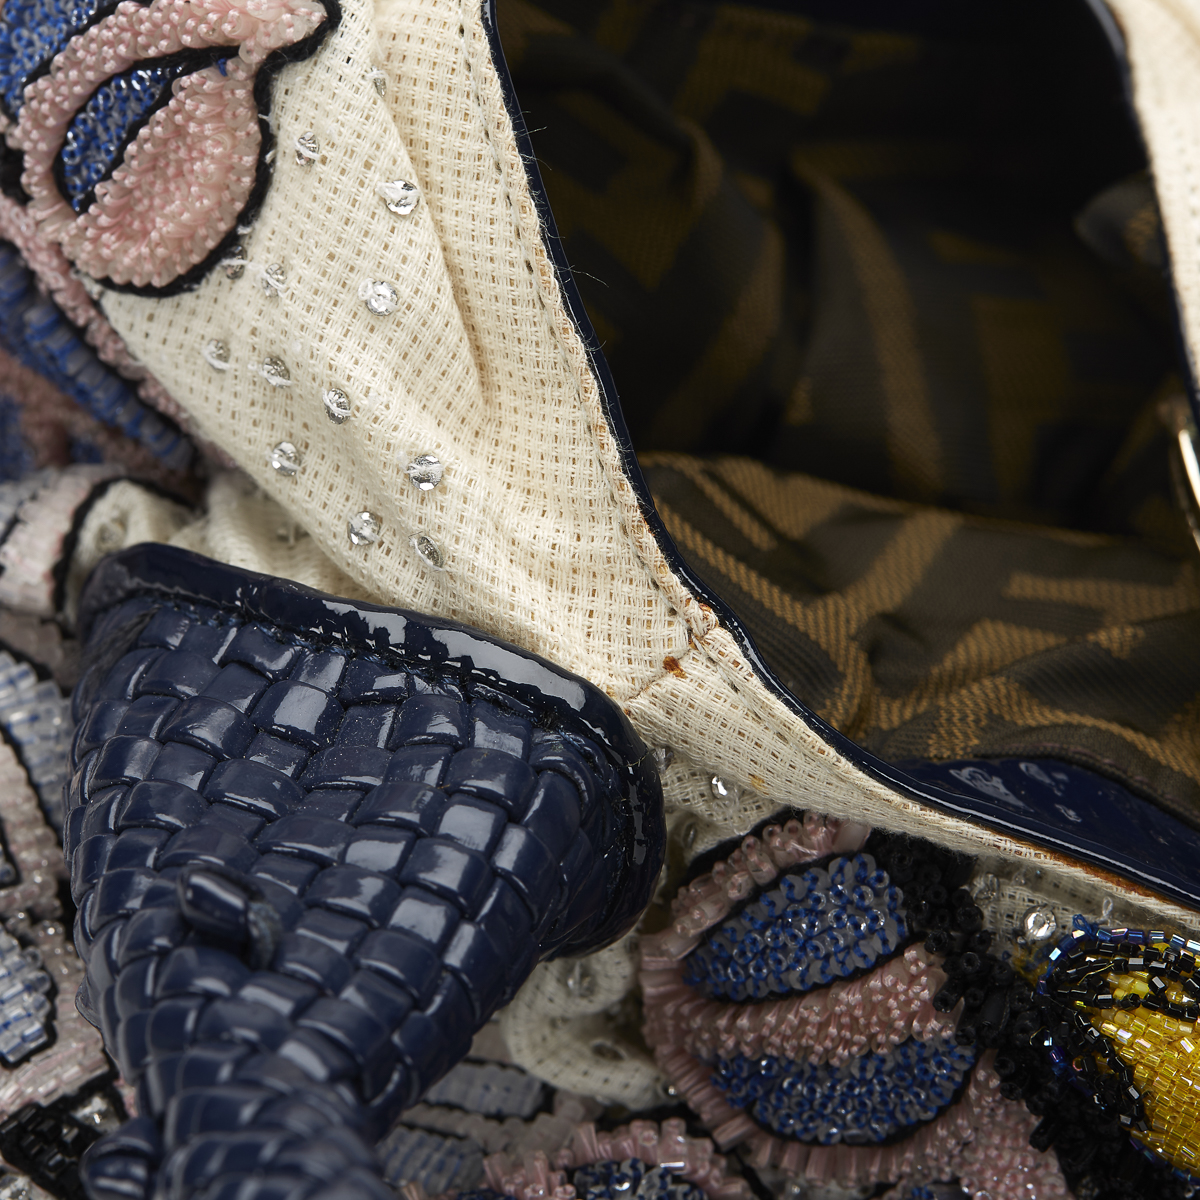 FENDI Spy Bag , - Multicolour Embellished Floral Spy Bag   TYPE Tote, Shoulder SERIAL NUMBER 2415- - Image 11 of 16